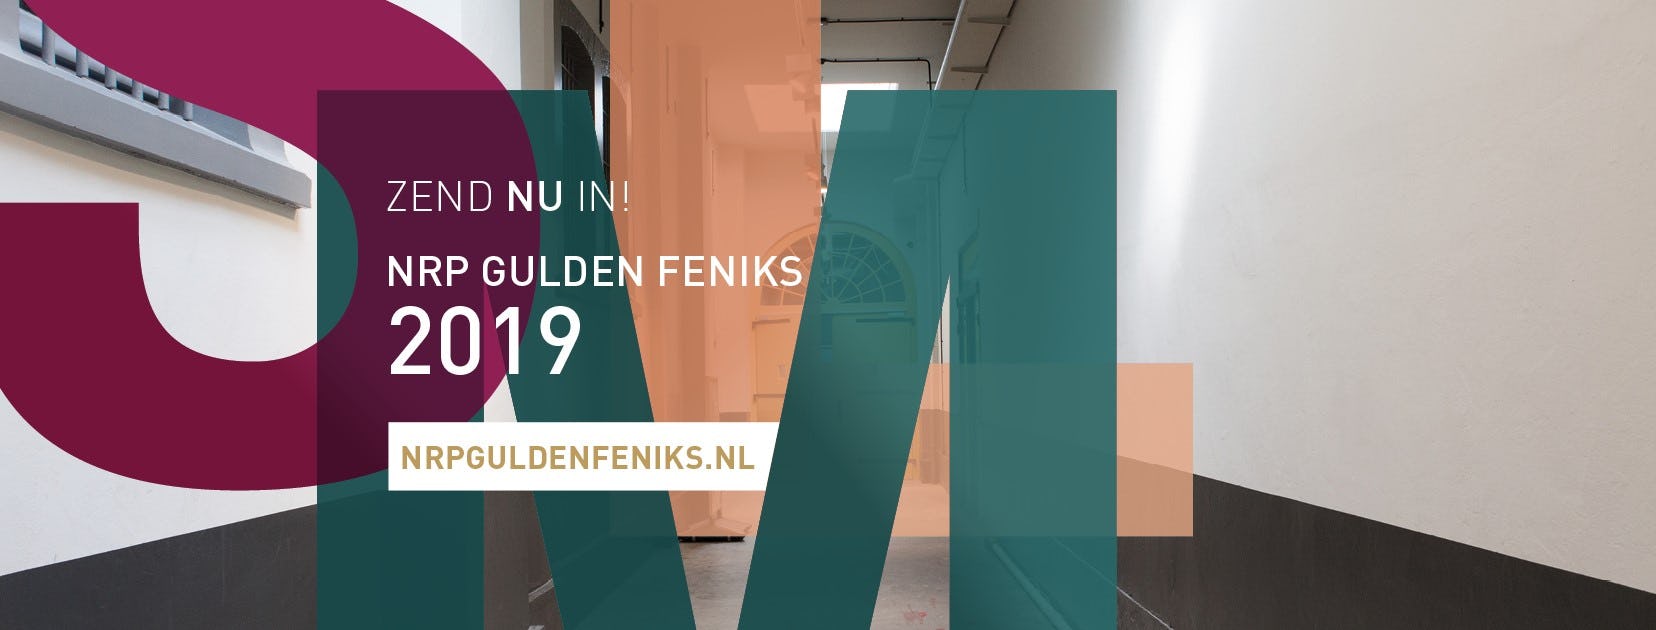 NRP Gulden Feniks 2019 van start